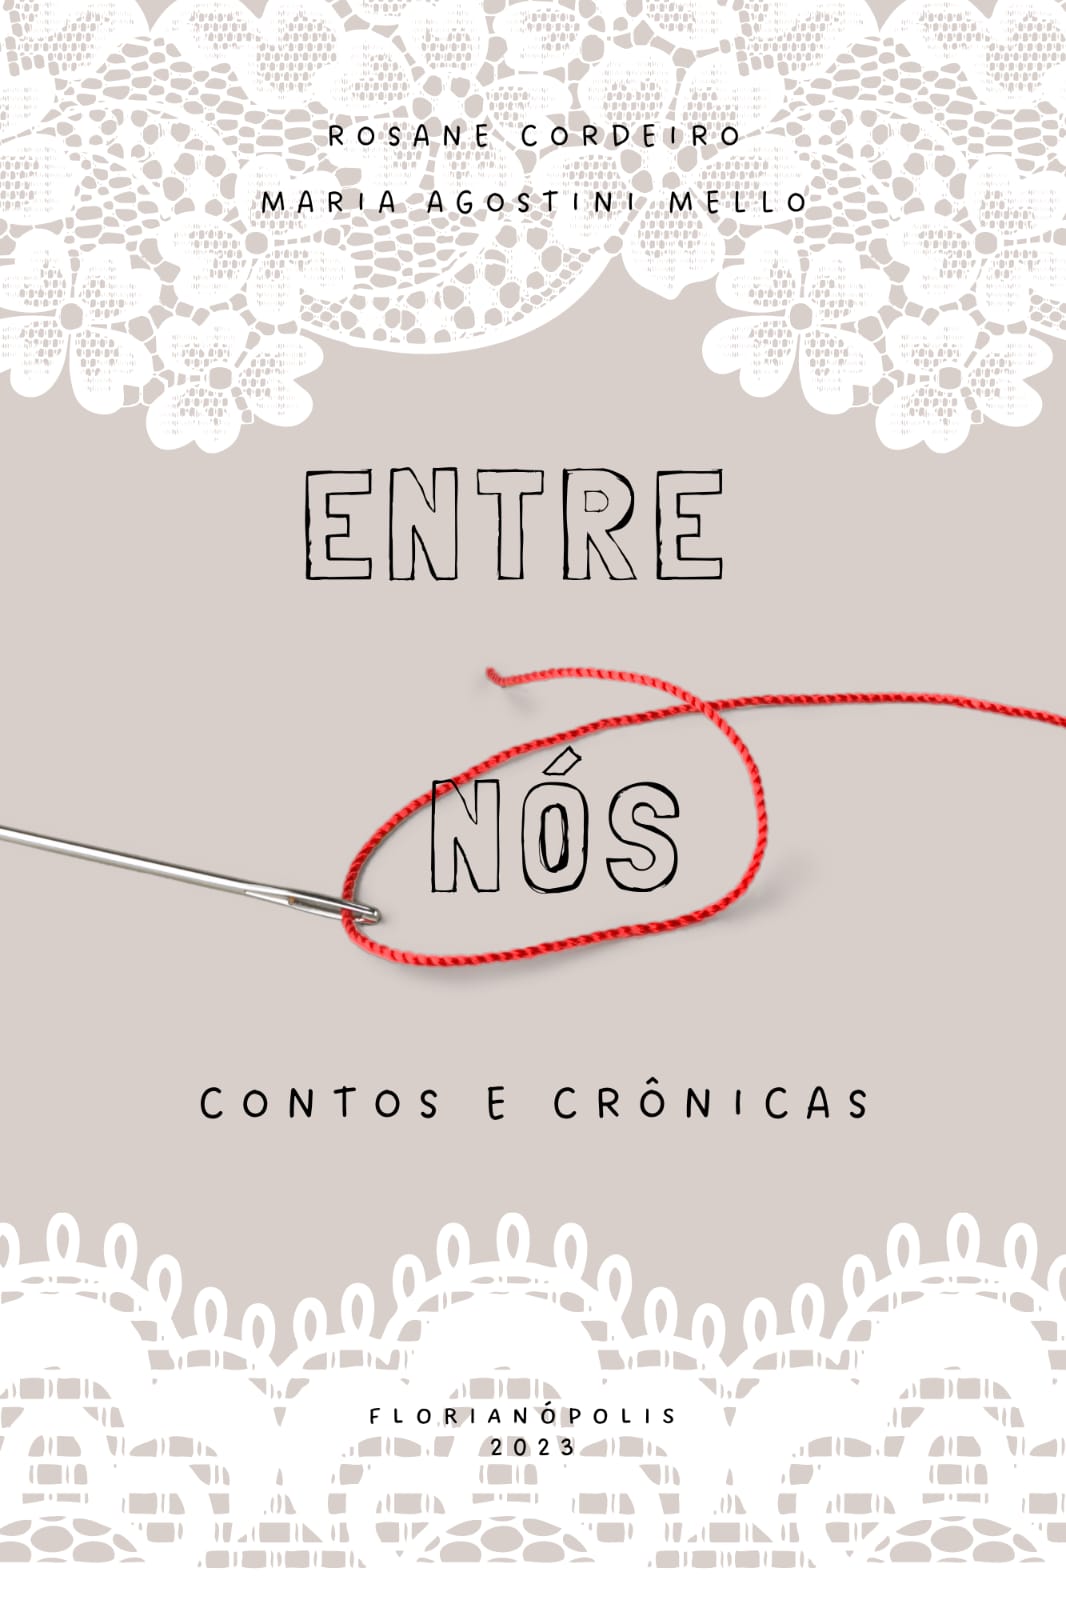 FCC - Fundação Catarinense de Cultura - Lançamento do livro Bruxa, sim.  Má, não!, de Simone Santos Guimarães